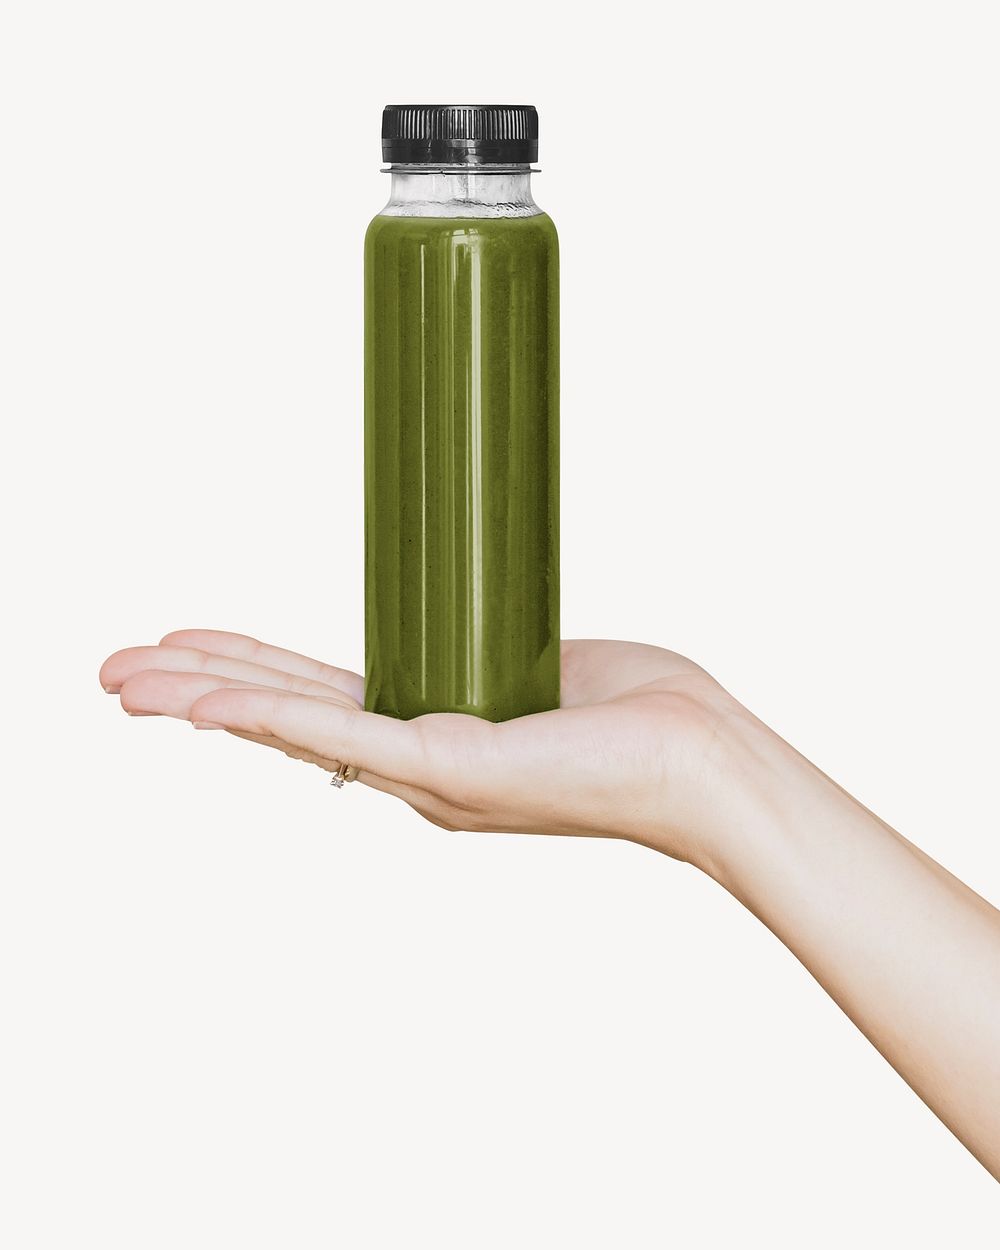 Celery juice bottle in hand